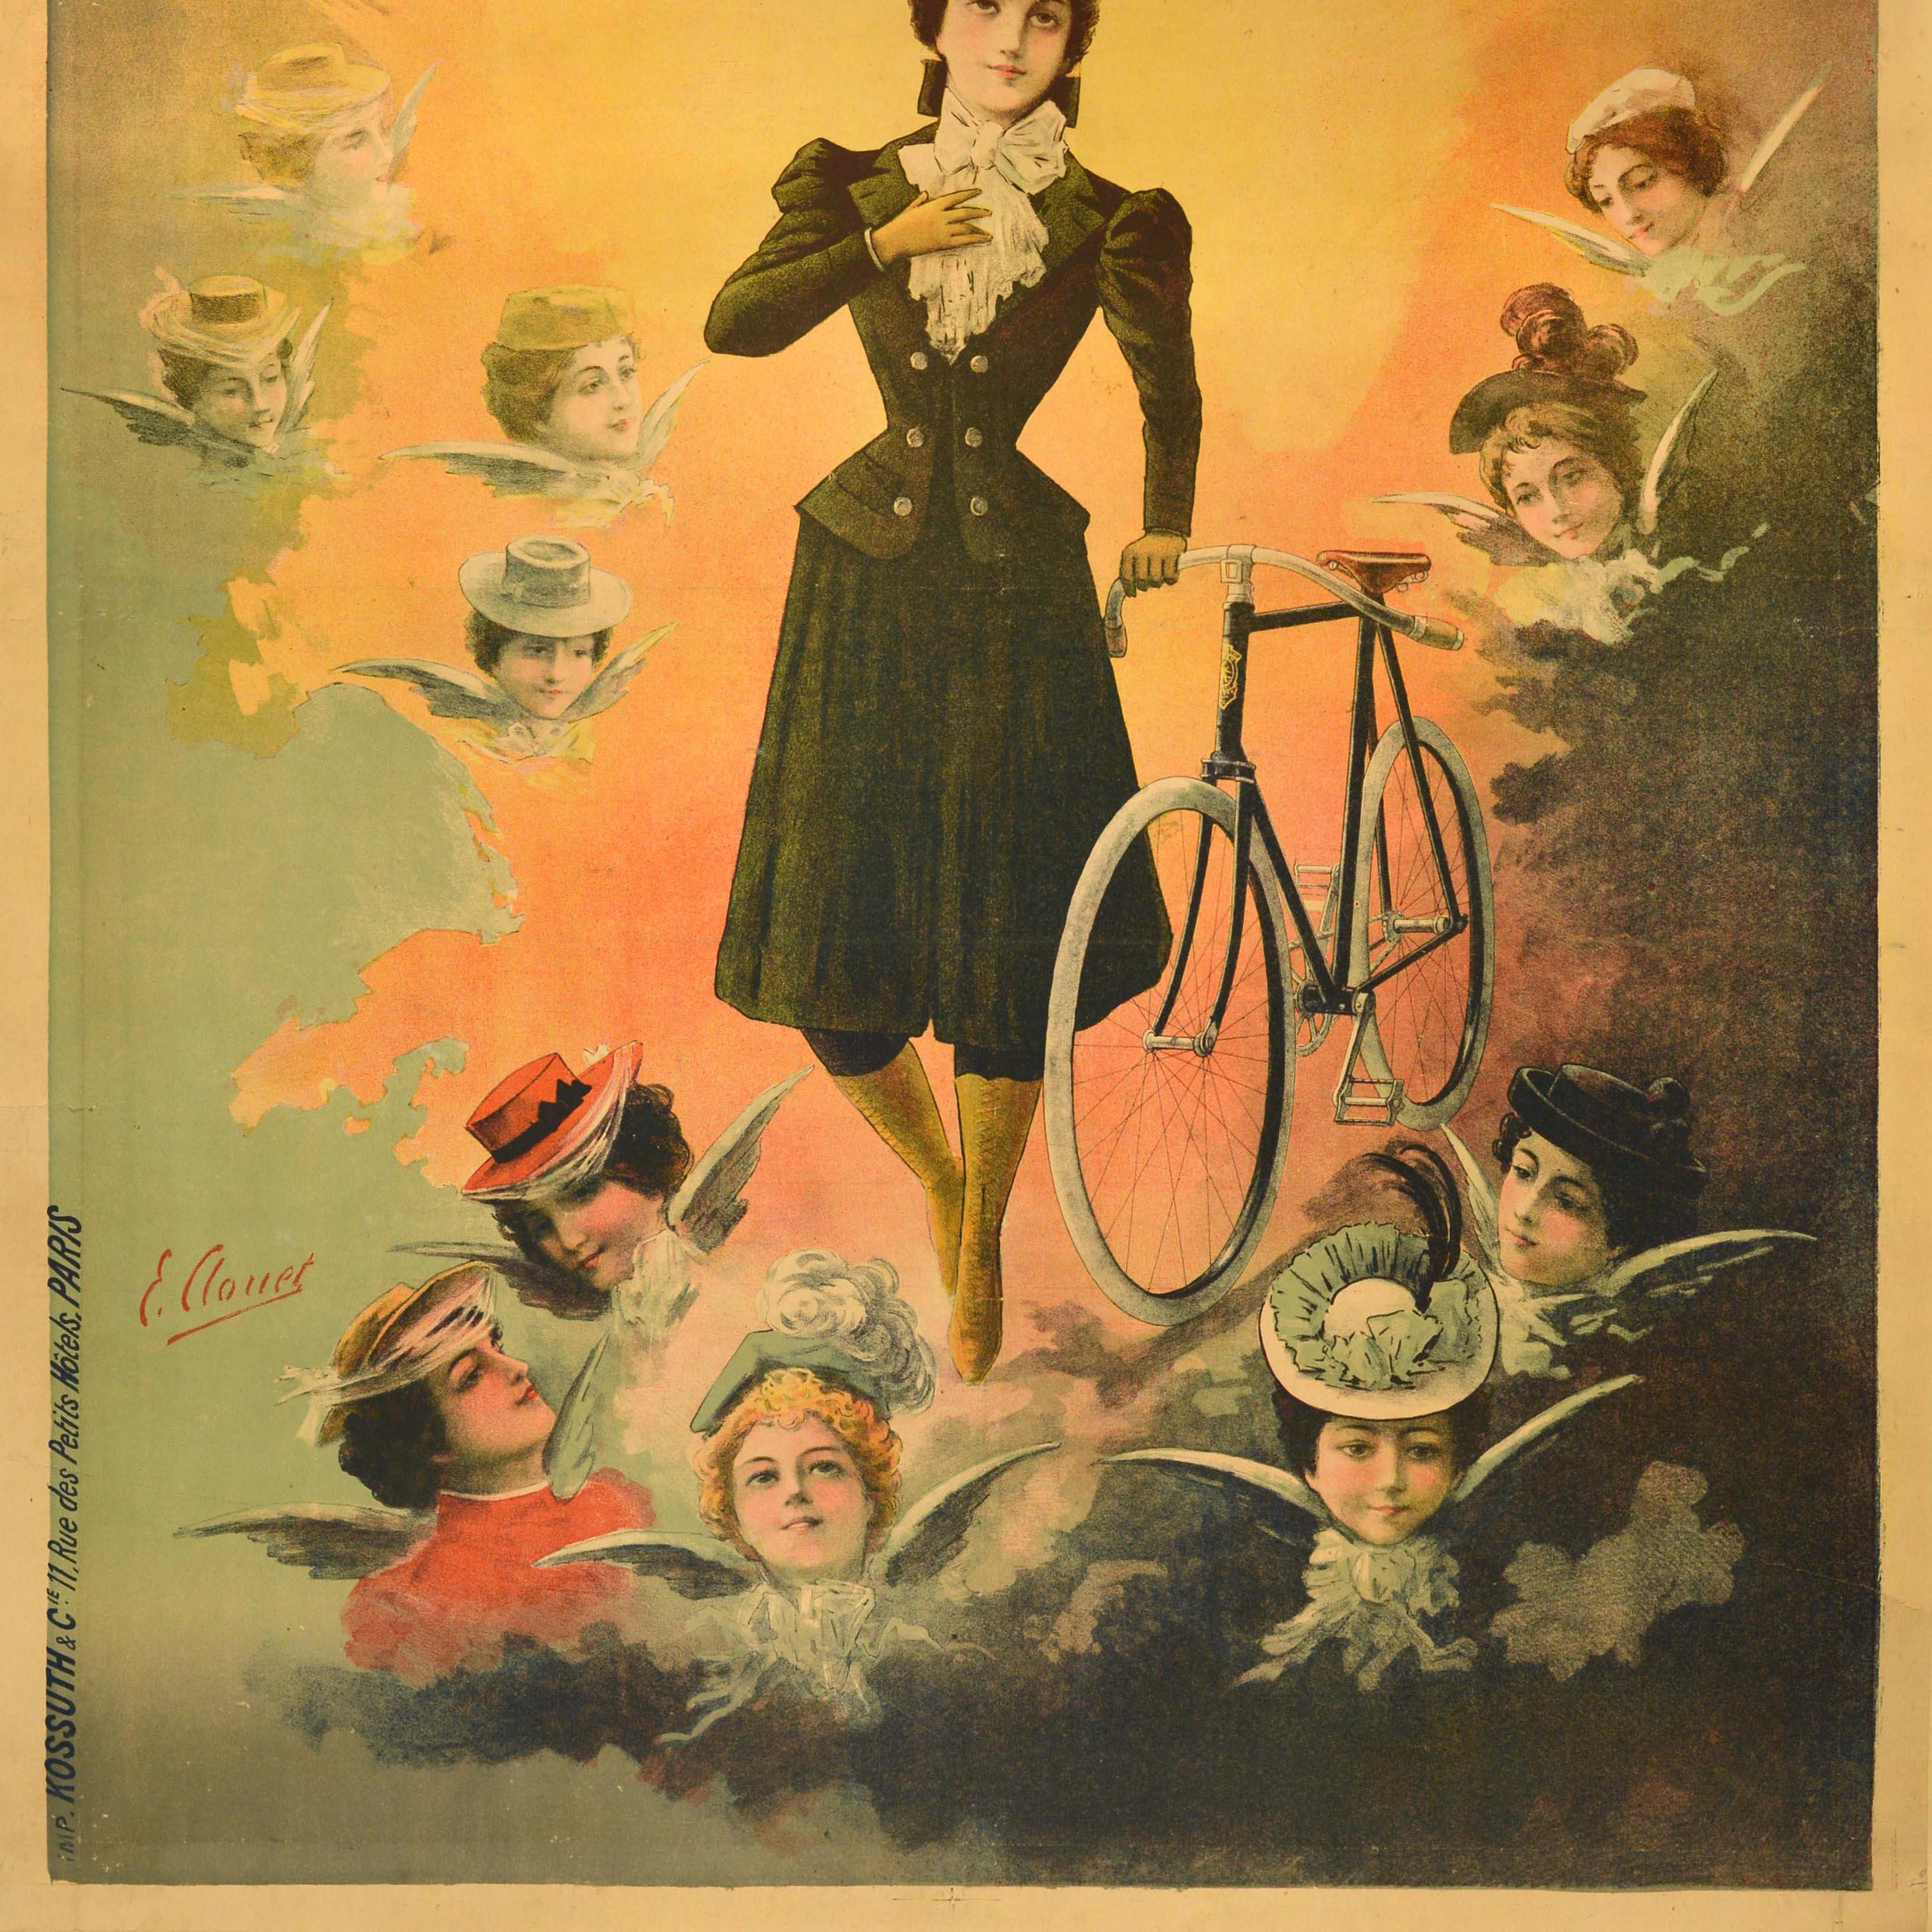 Ancienne affiche publicitaire originale pour les bicyclettes Up&Up présentant une illustration céleste d'une dame habillée à la mode avec une bicyclette éclairée par le soleil brillant derrière elle et les visages des dames comme des anges avec des